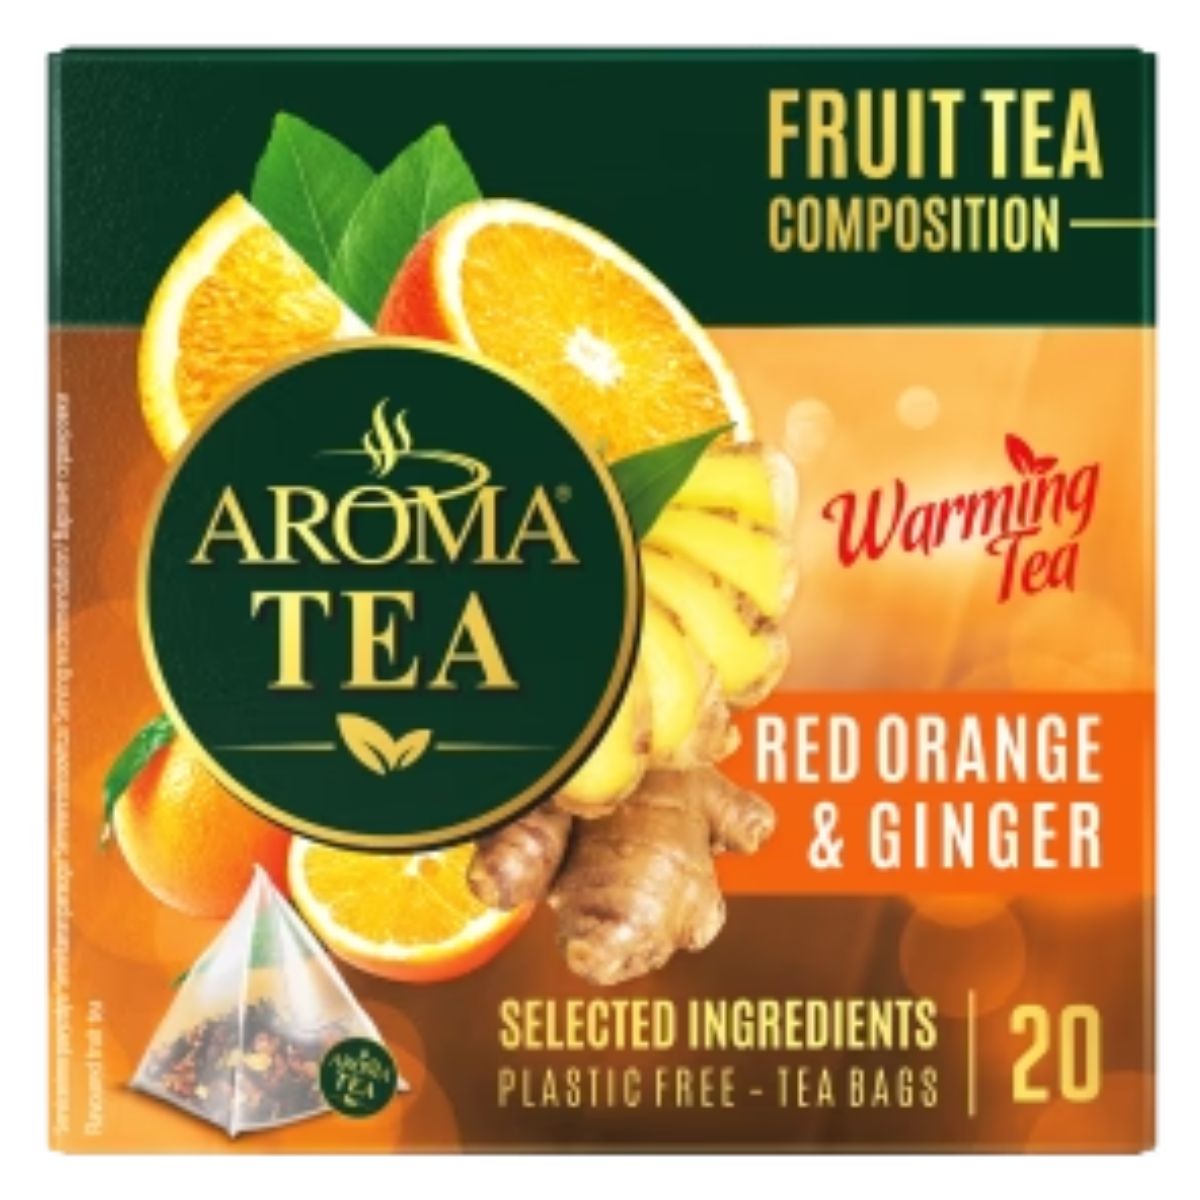 Aroma Tea - Warming Orange Ginger Tea - 20 Sachets fruit composition red orange & ginger.